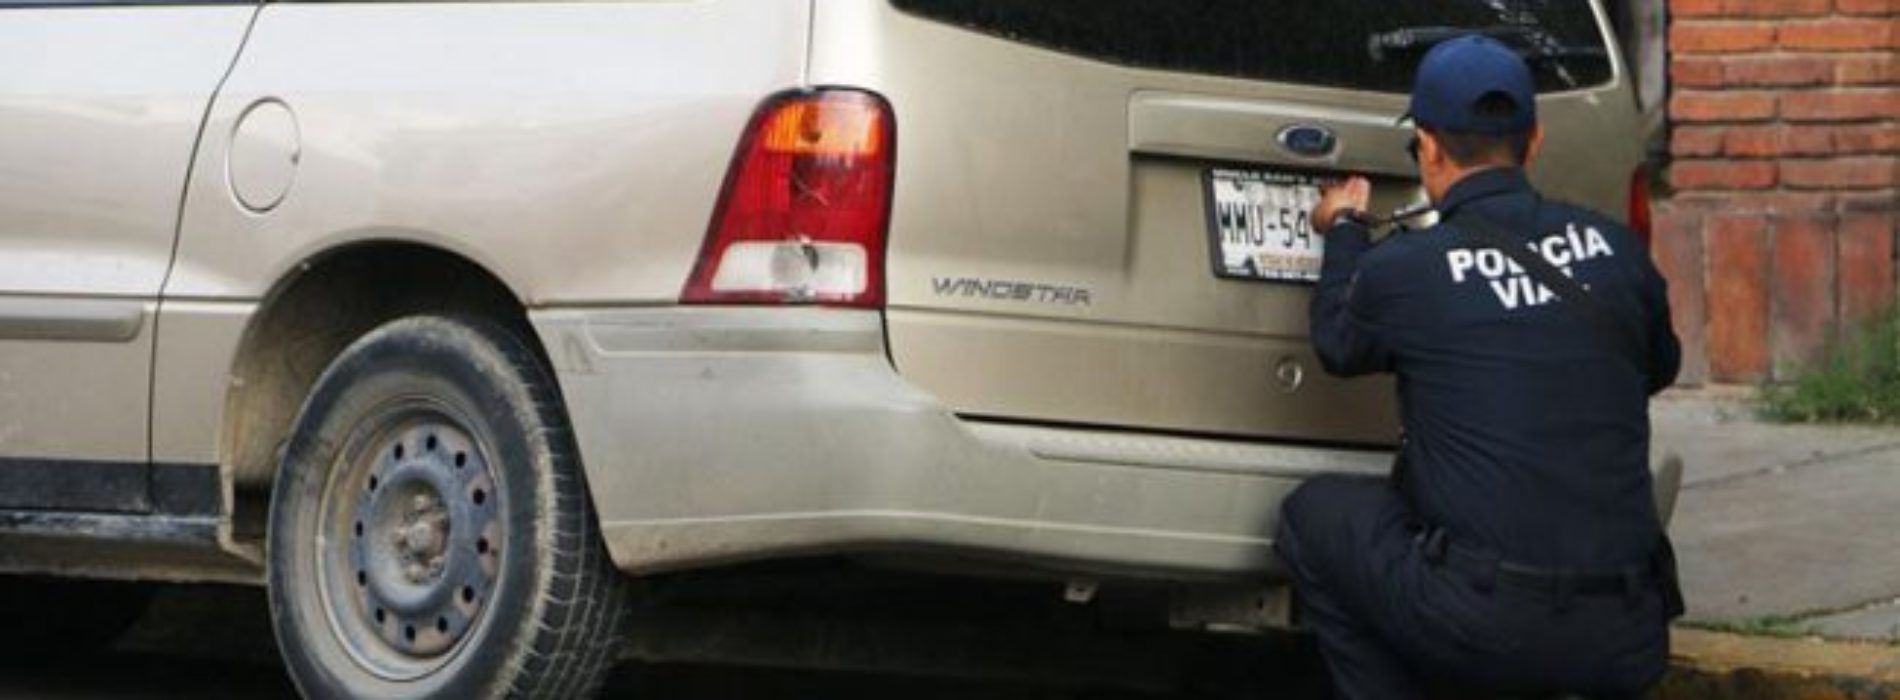 Ilegales los operativos contra autos con placas foráneas:
DDHPO